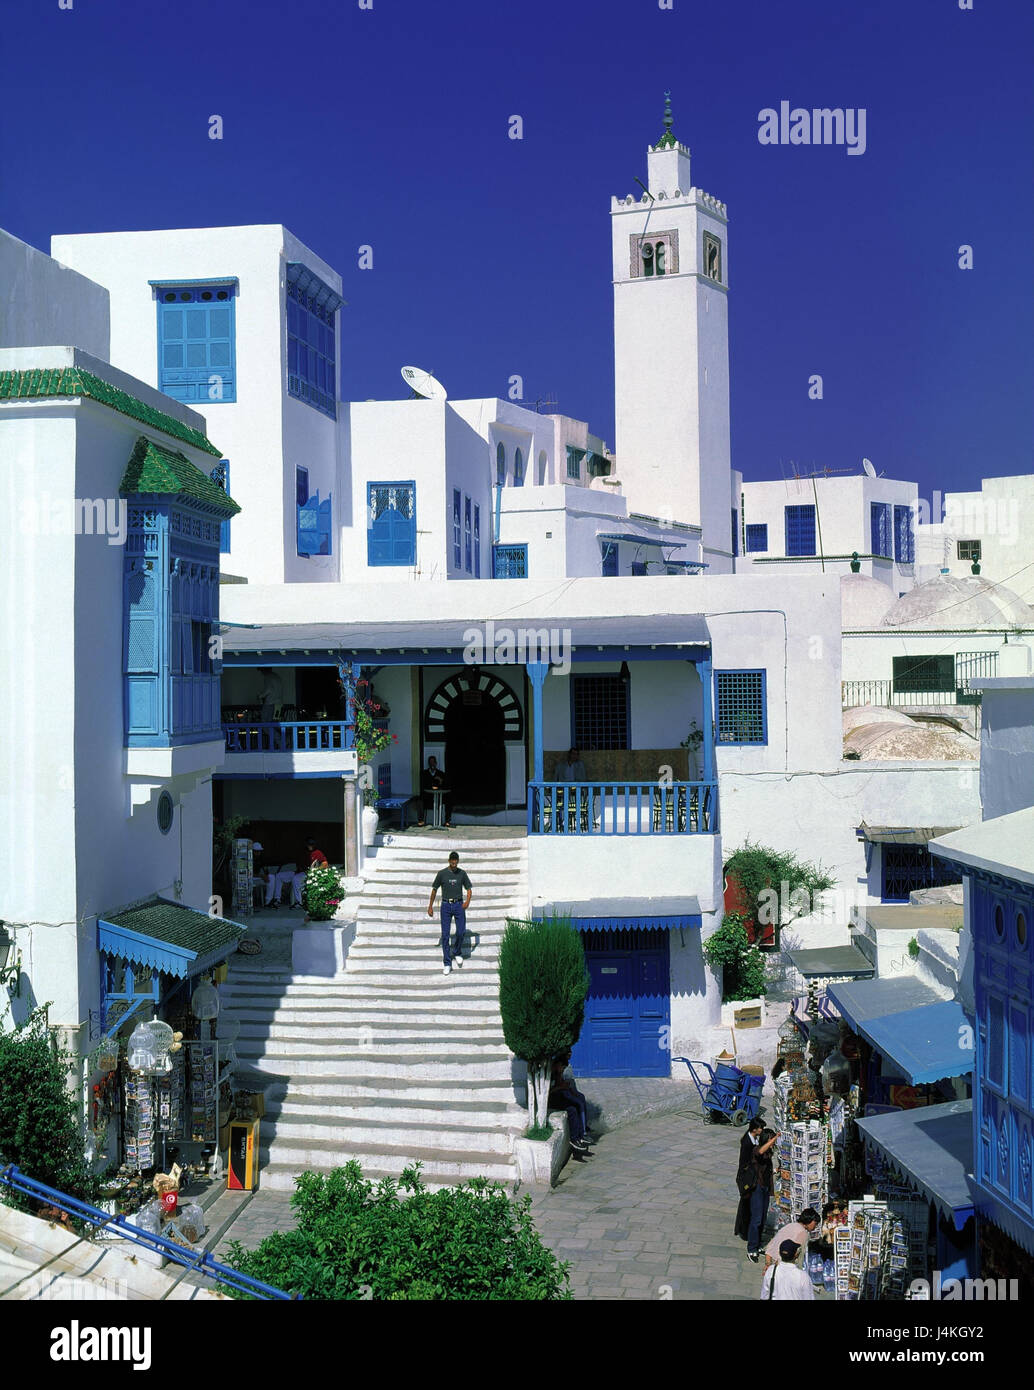 Tunesien, Sidi Bou Said, lokale Ansicht, Lane, Café, Treppen, Bell Tower Dorf Künster, Ort, in der Nähe Tunis, Architektur, in der andalusischen Weg, Urlaubsort, Tourismus Stockfoto